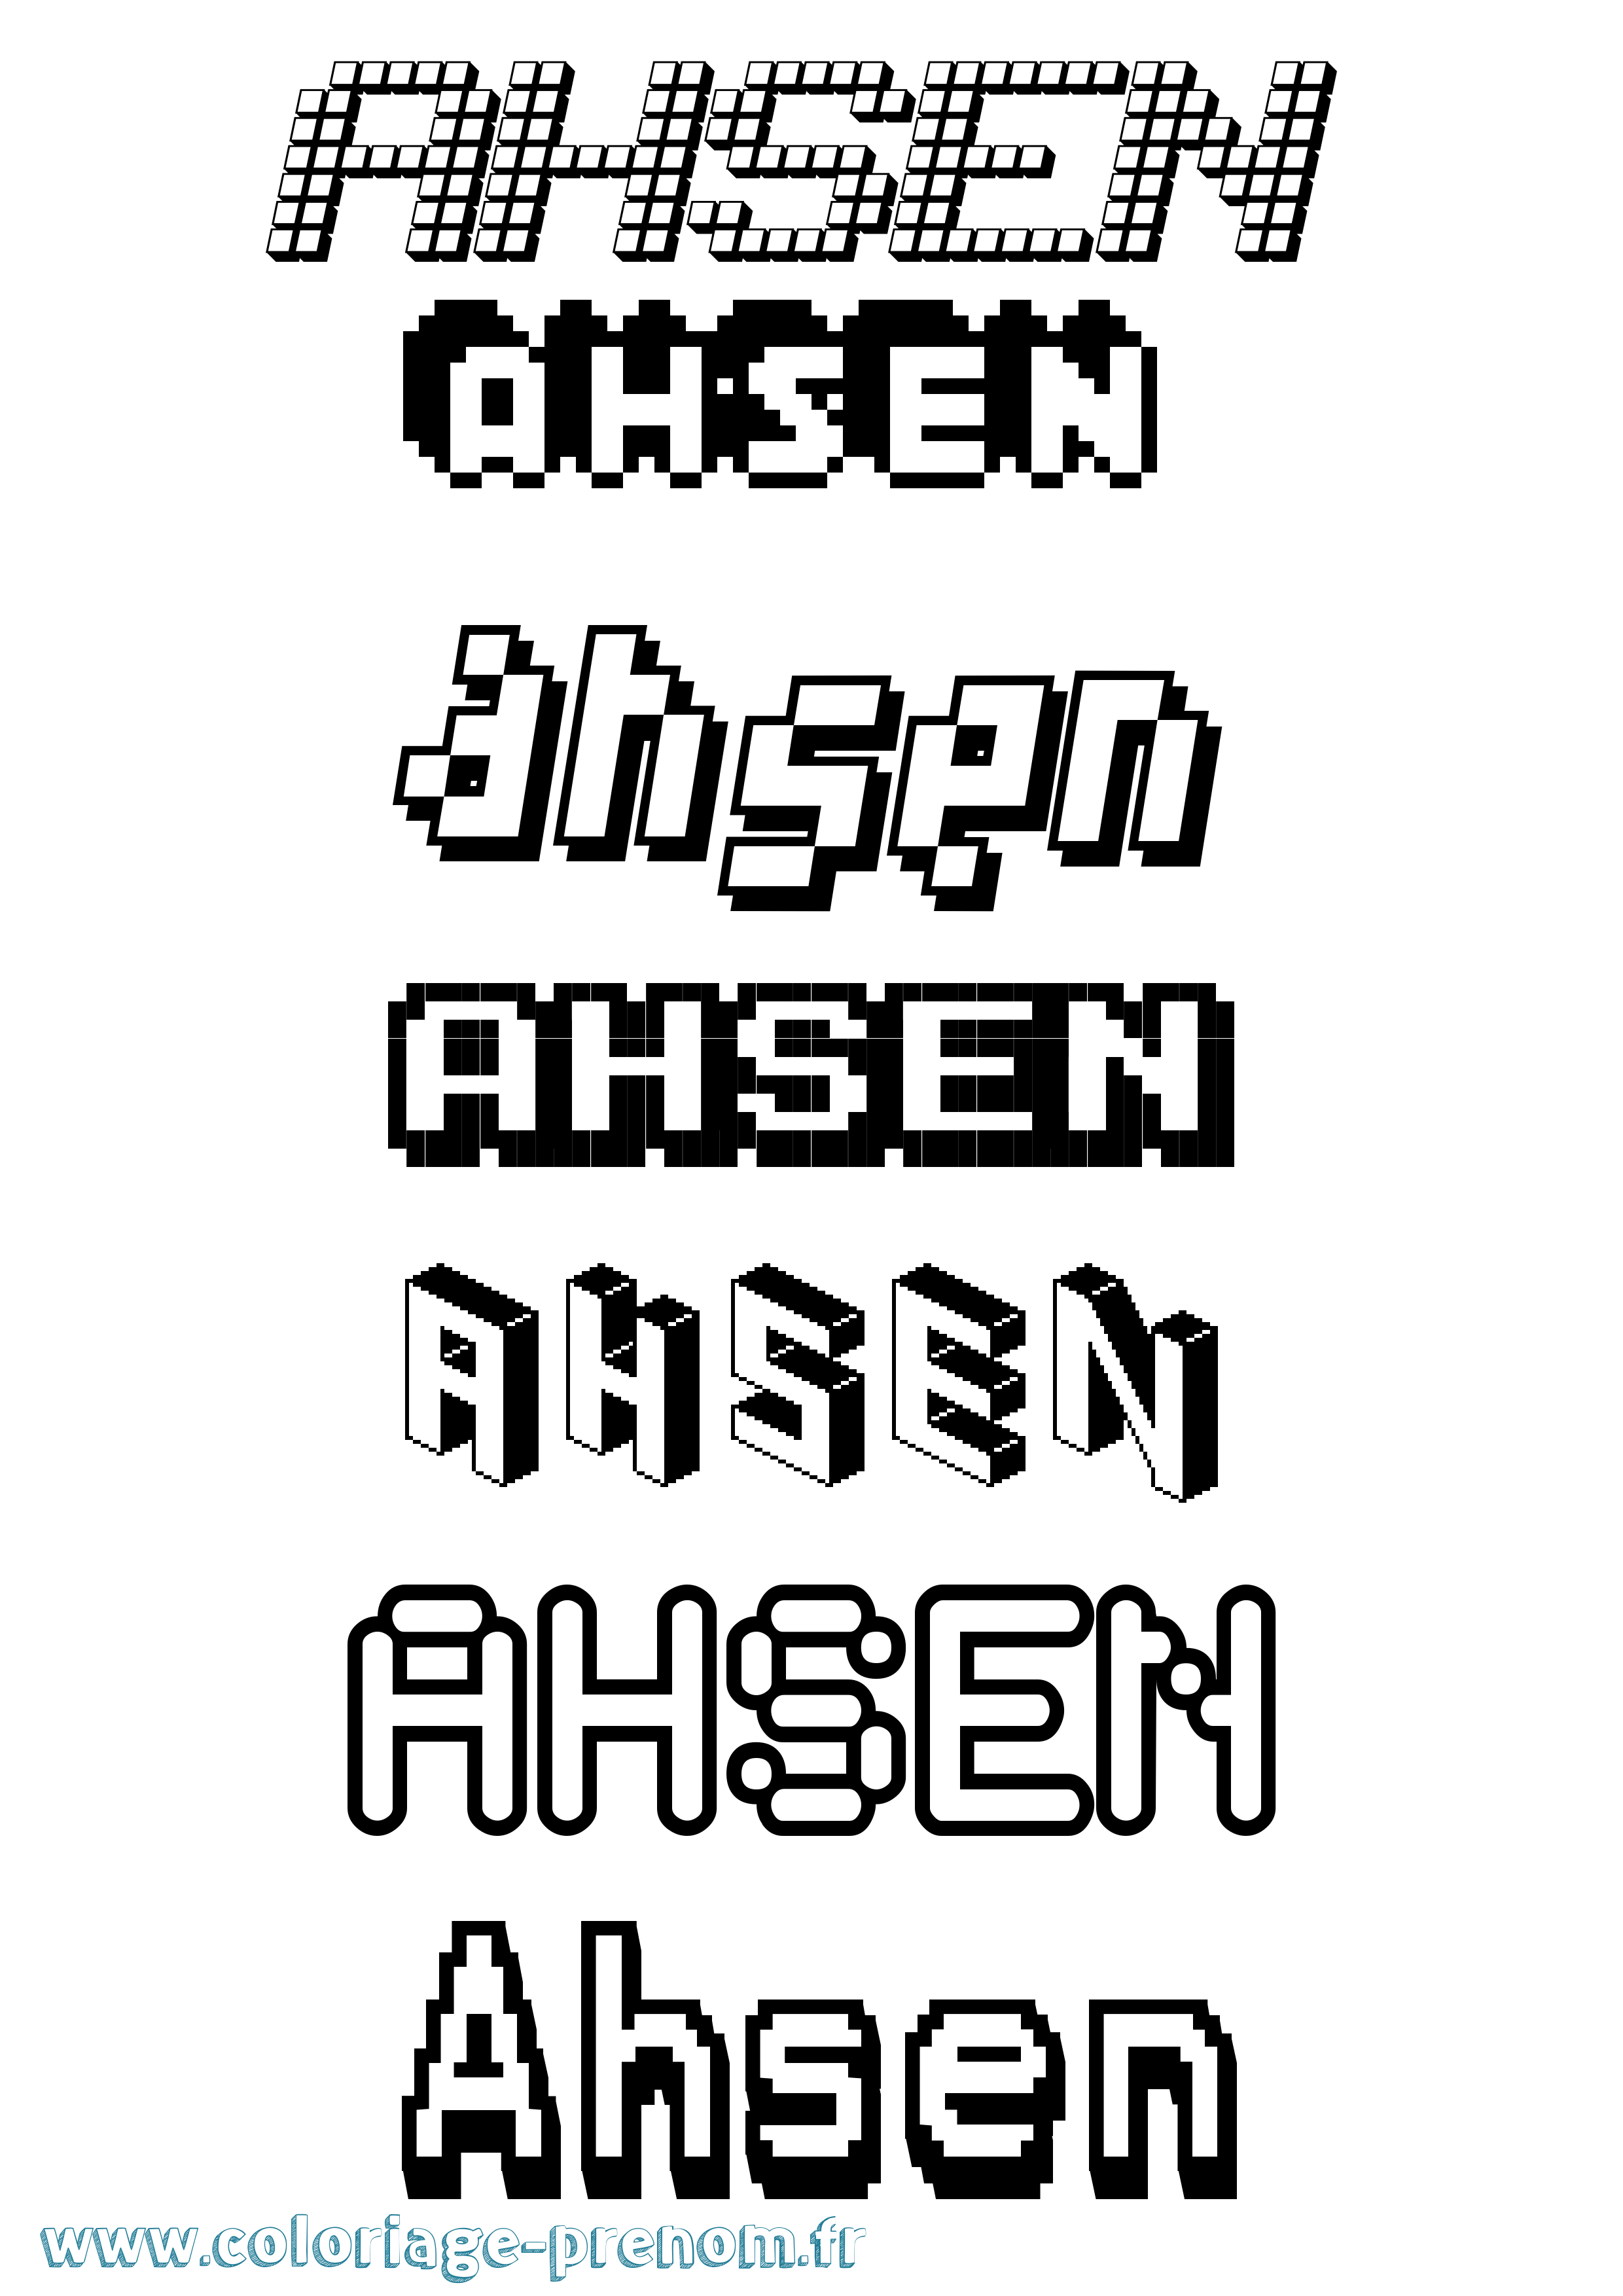 Coloriage prénom Ahsen Pixel